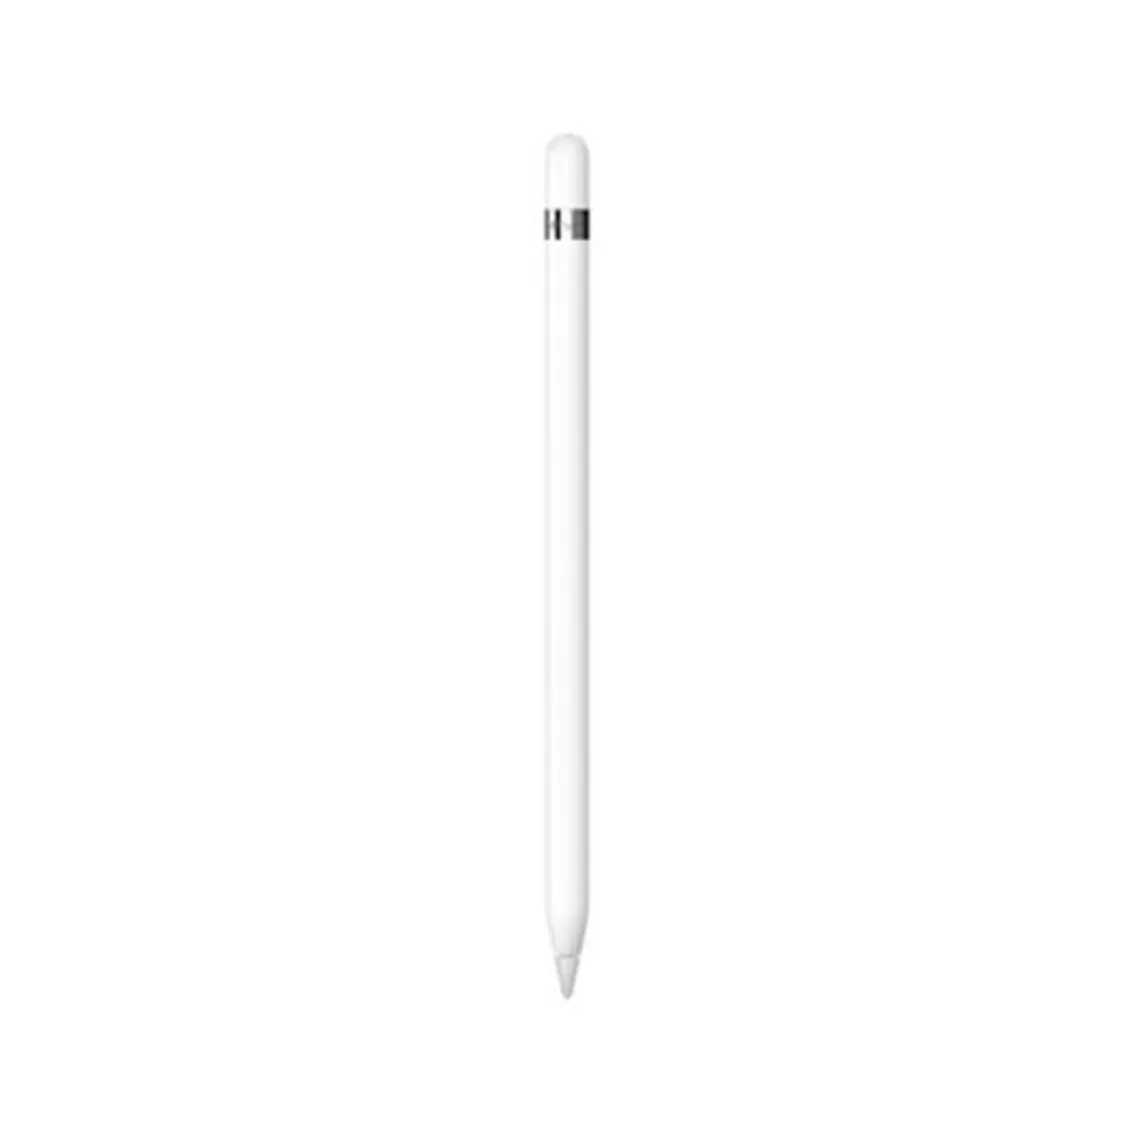 Apple pencil ipad pro blanco 1ª gen compatible con ipad pro 12.9pulgadas 1ªgen - 2ªgen